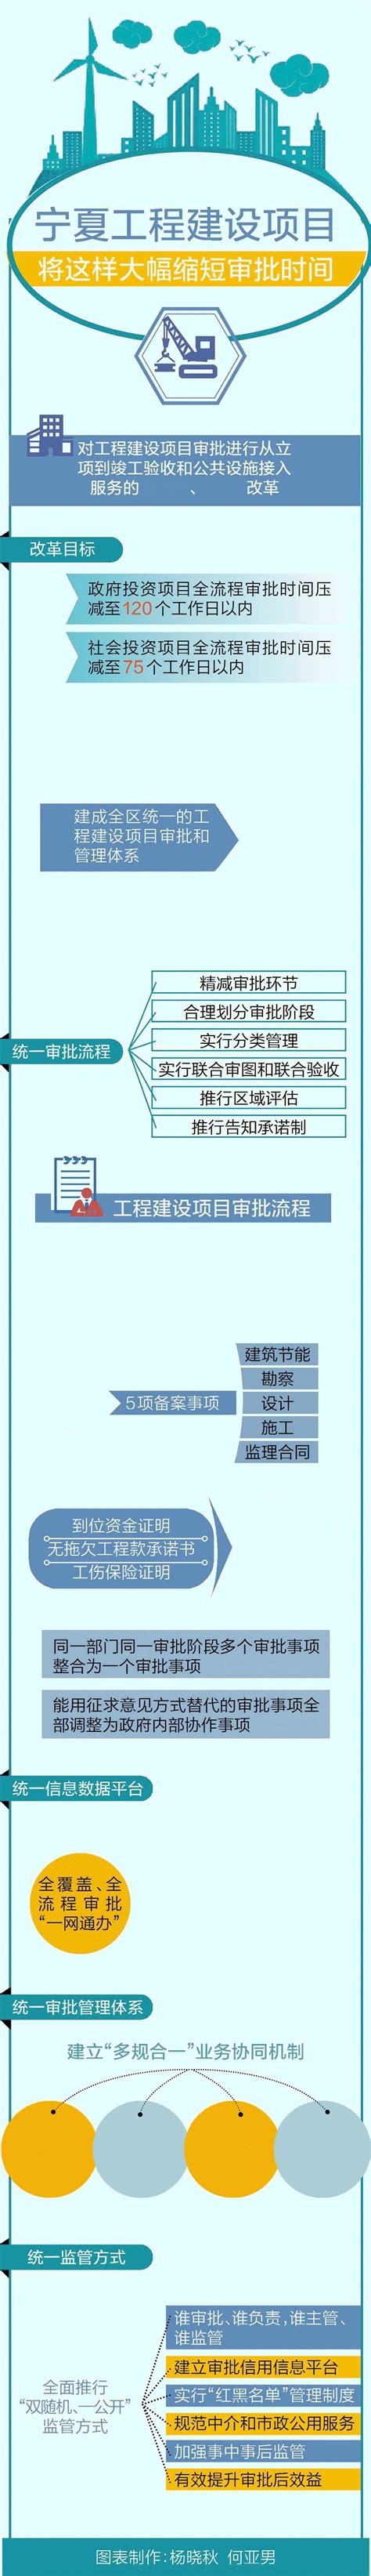 《宁夏工程建设项目审批制度改革实施方案》图解- 宁夏